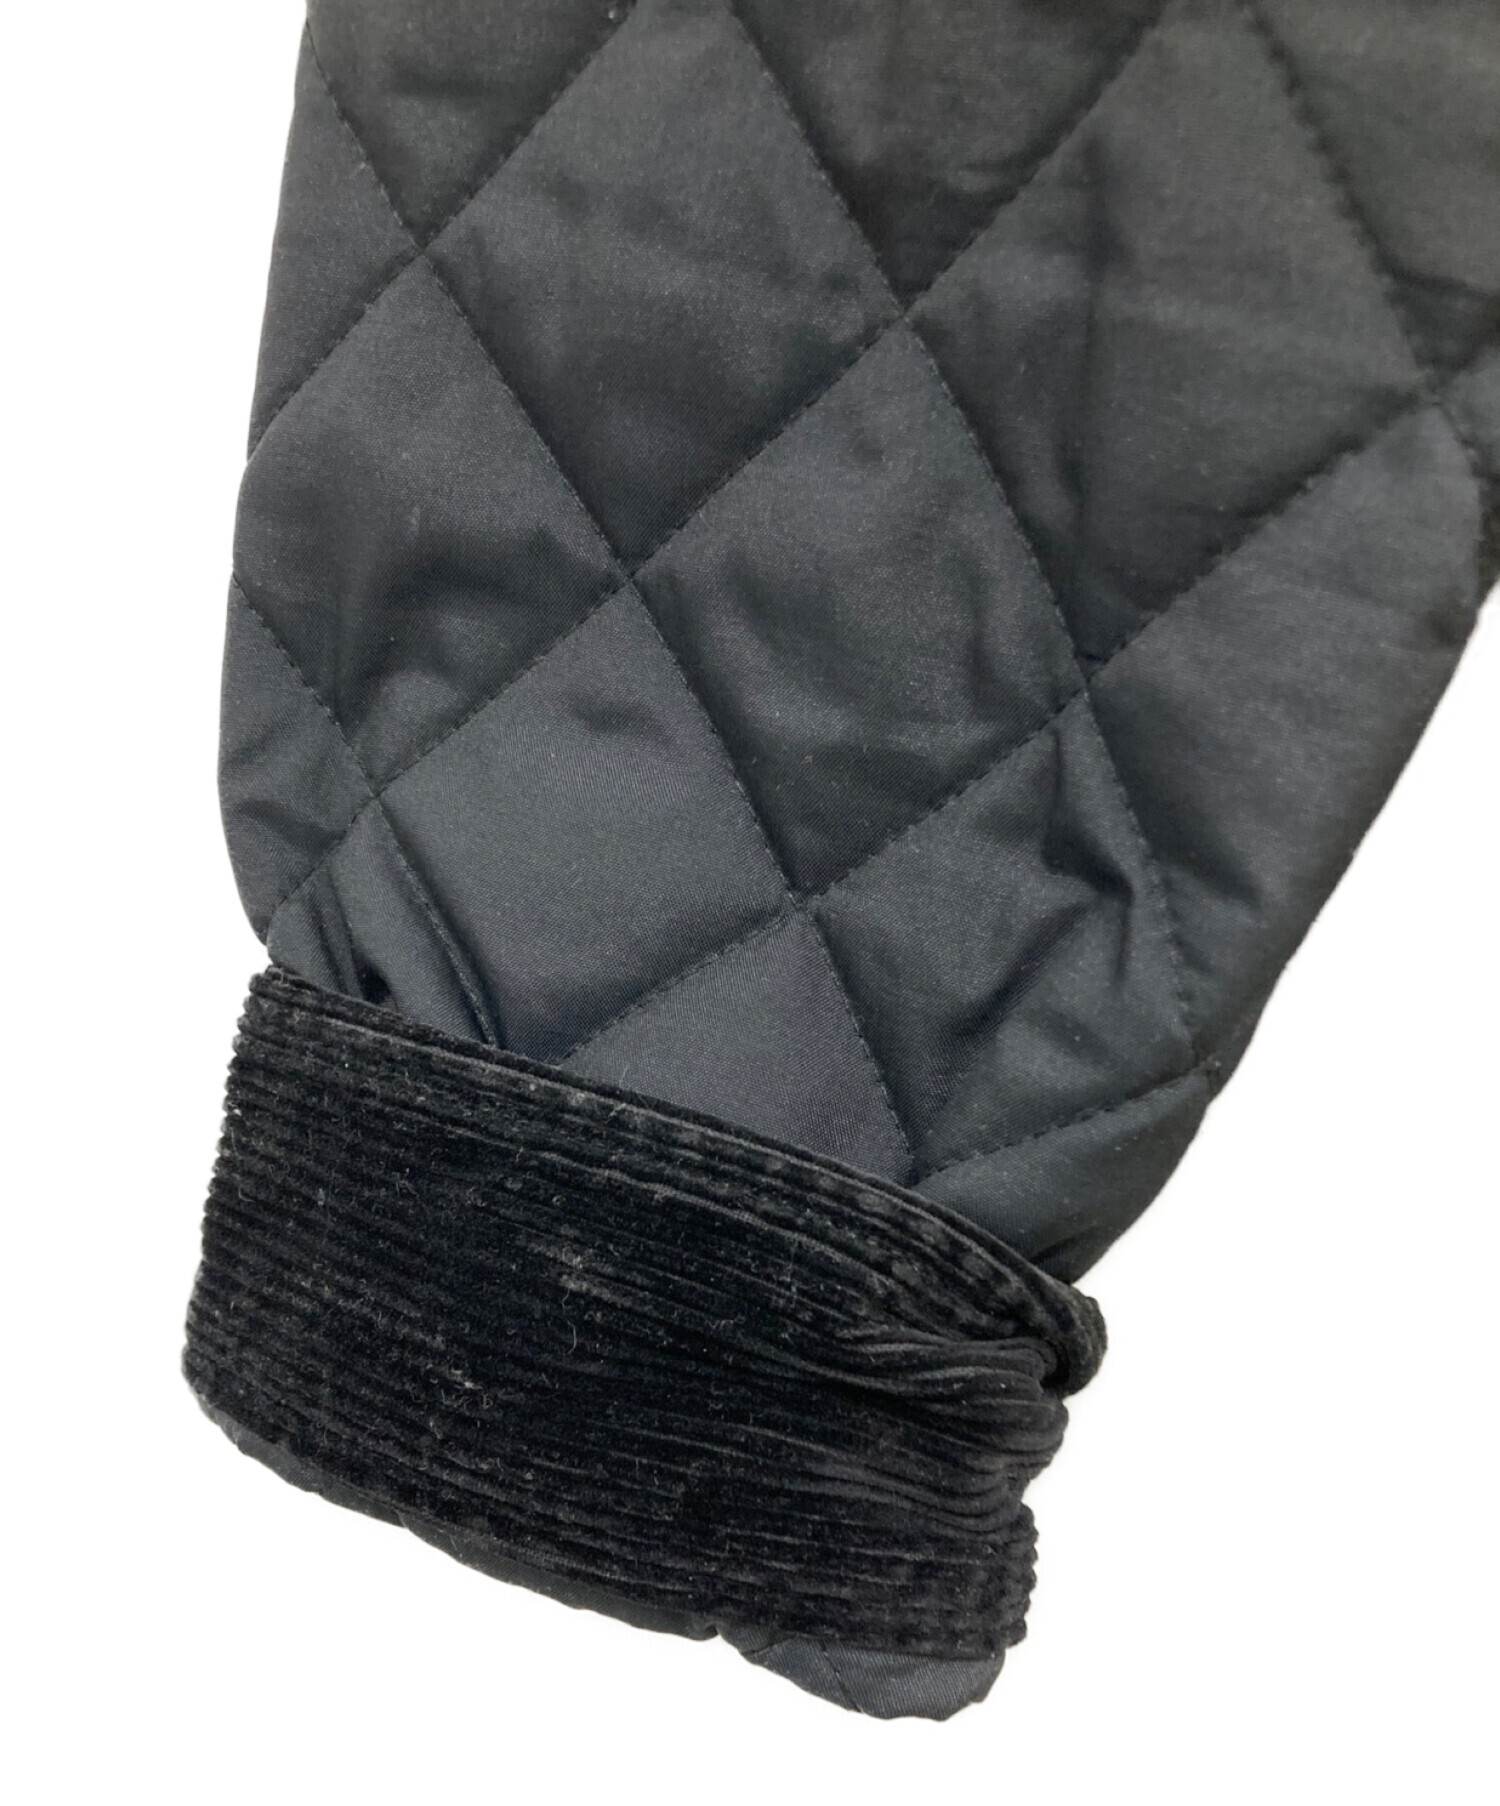 WACKO MARIA (ワコマリア) キルティングジャケット ブラック サイズ:Ｍ